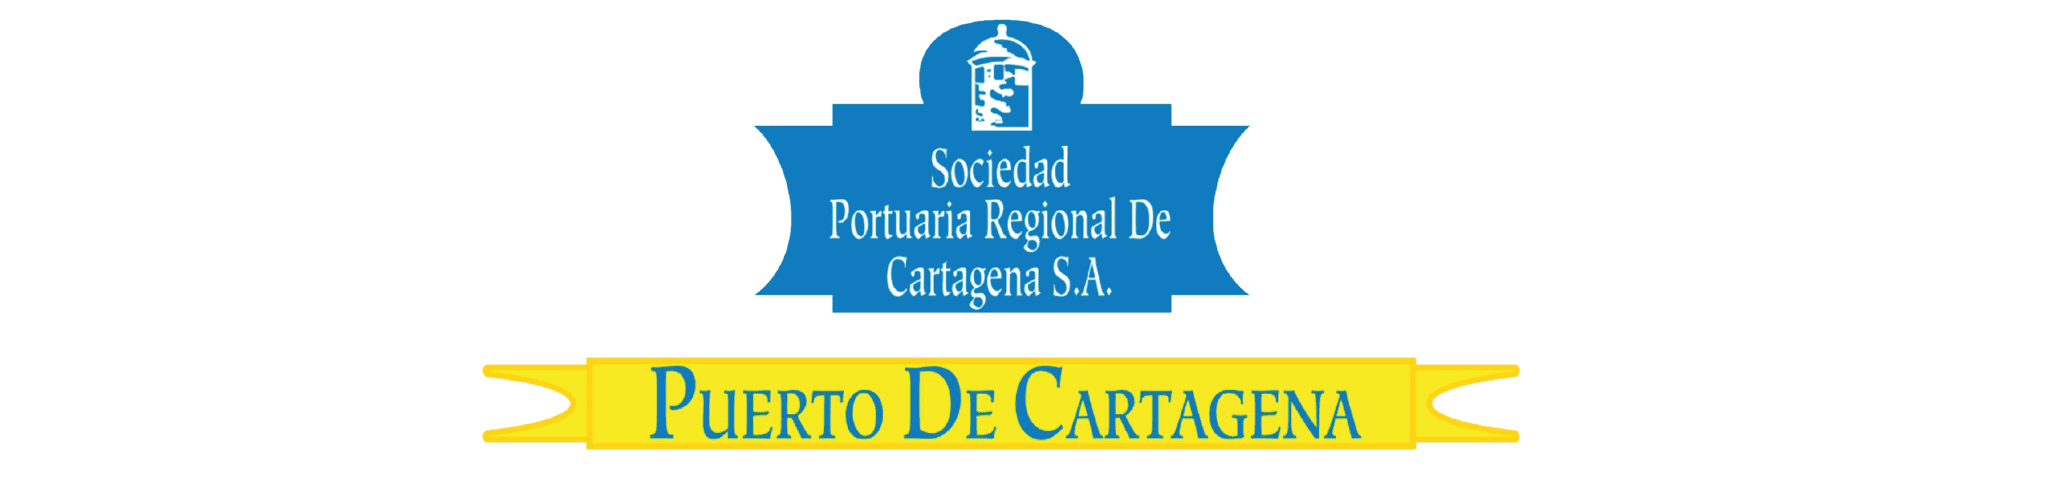 Puertocartagena_Base logos pagina web_Mesa de trabajo 1